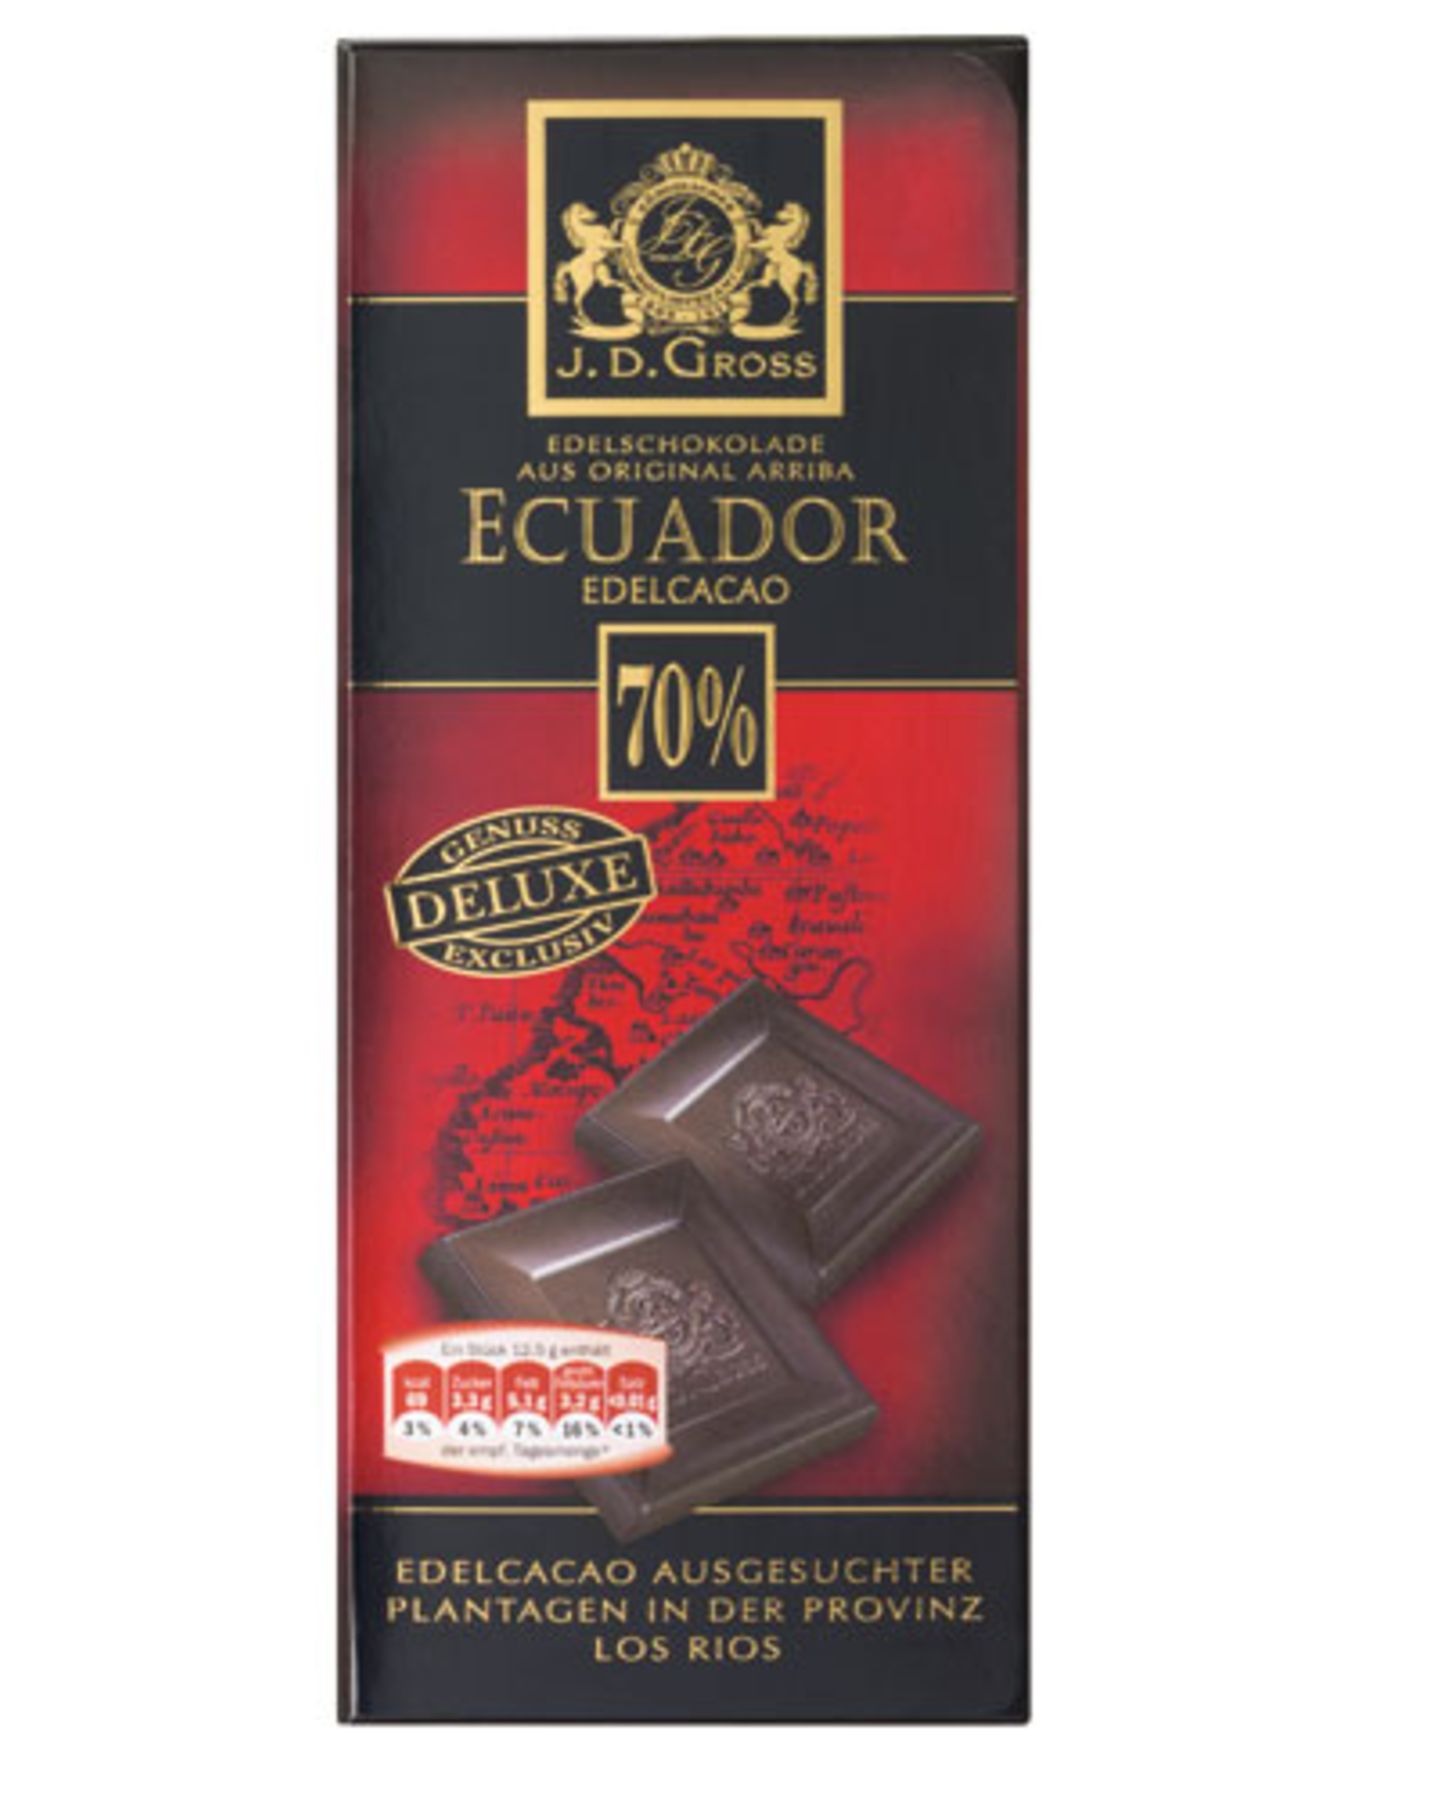 Platz 3: J.D. Gross (über Lidl), Ecuador Edelcacao (70 Prozent) Preis pro 100 Gramm: 0,76 Euro Bewertung: süß, eher weich-schmelzend bis klebrig, mit Vanillenote